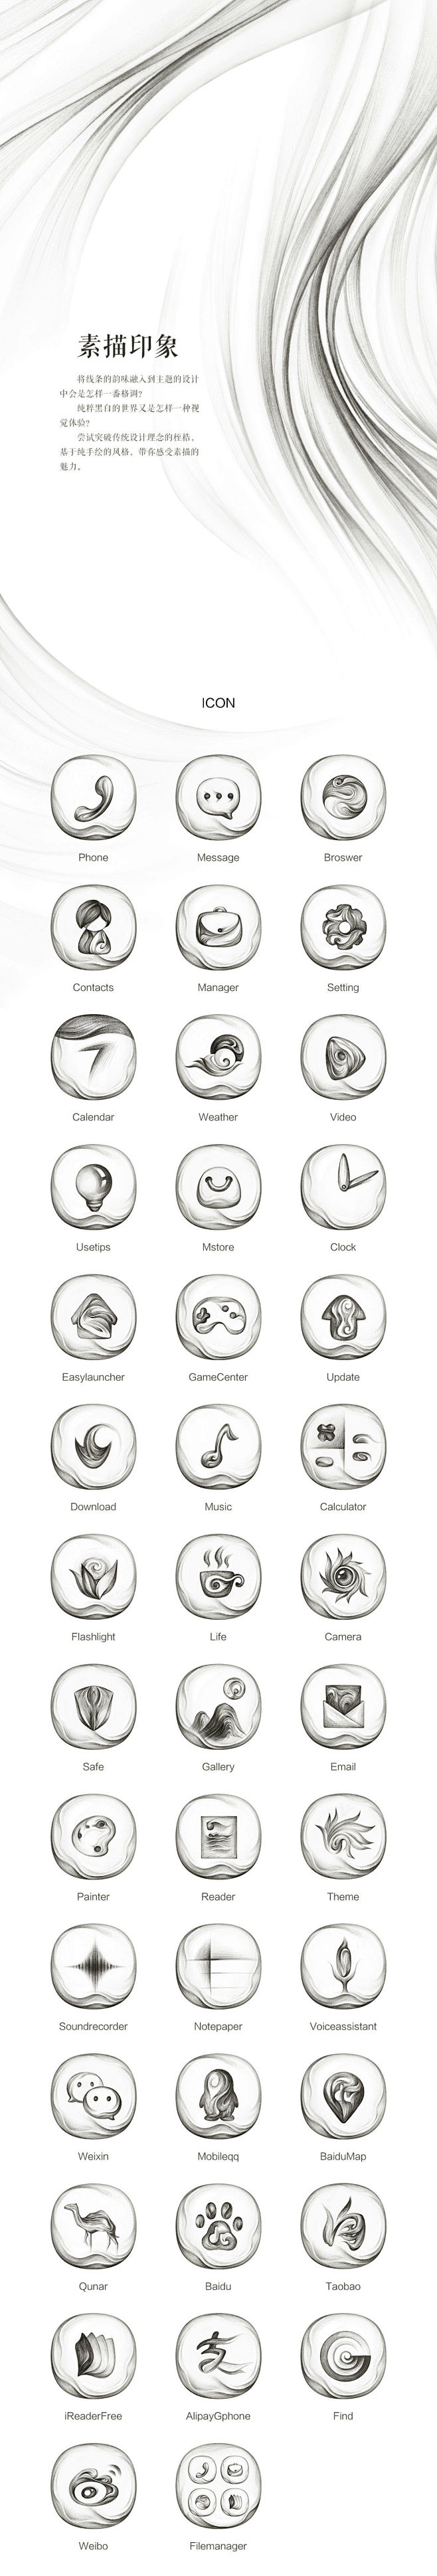 手绘素描风格手机主题UI设计